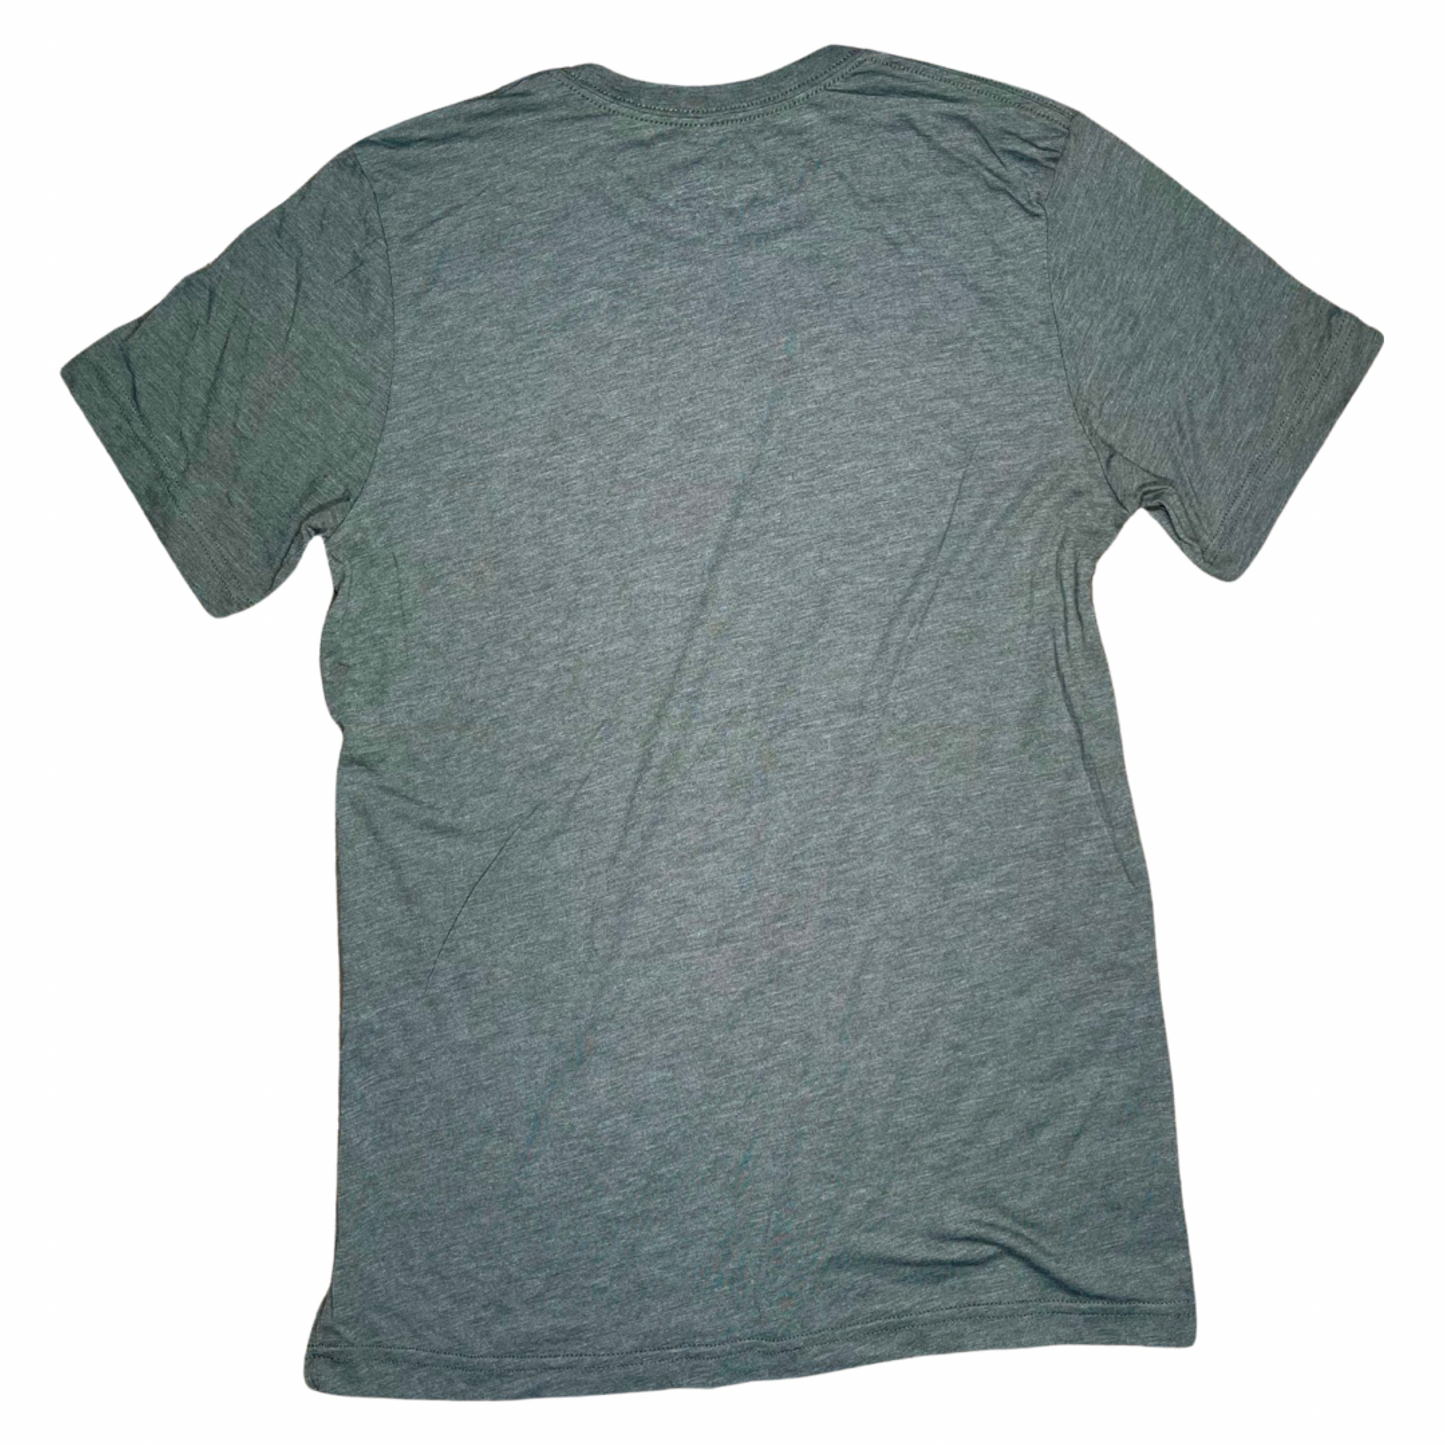 Vixere Vintage Logo Triblend Unisex T-Shirt